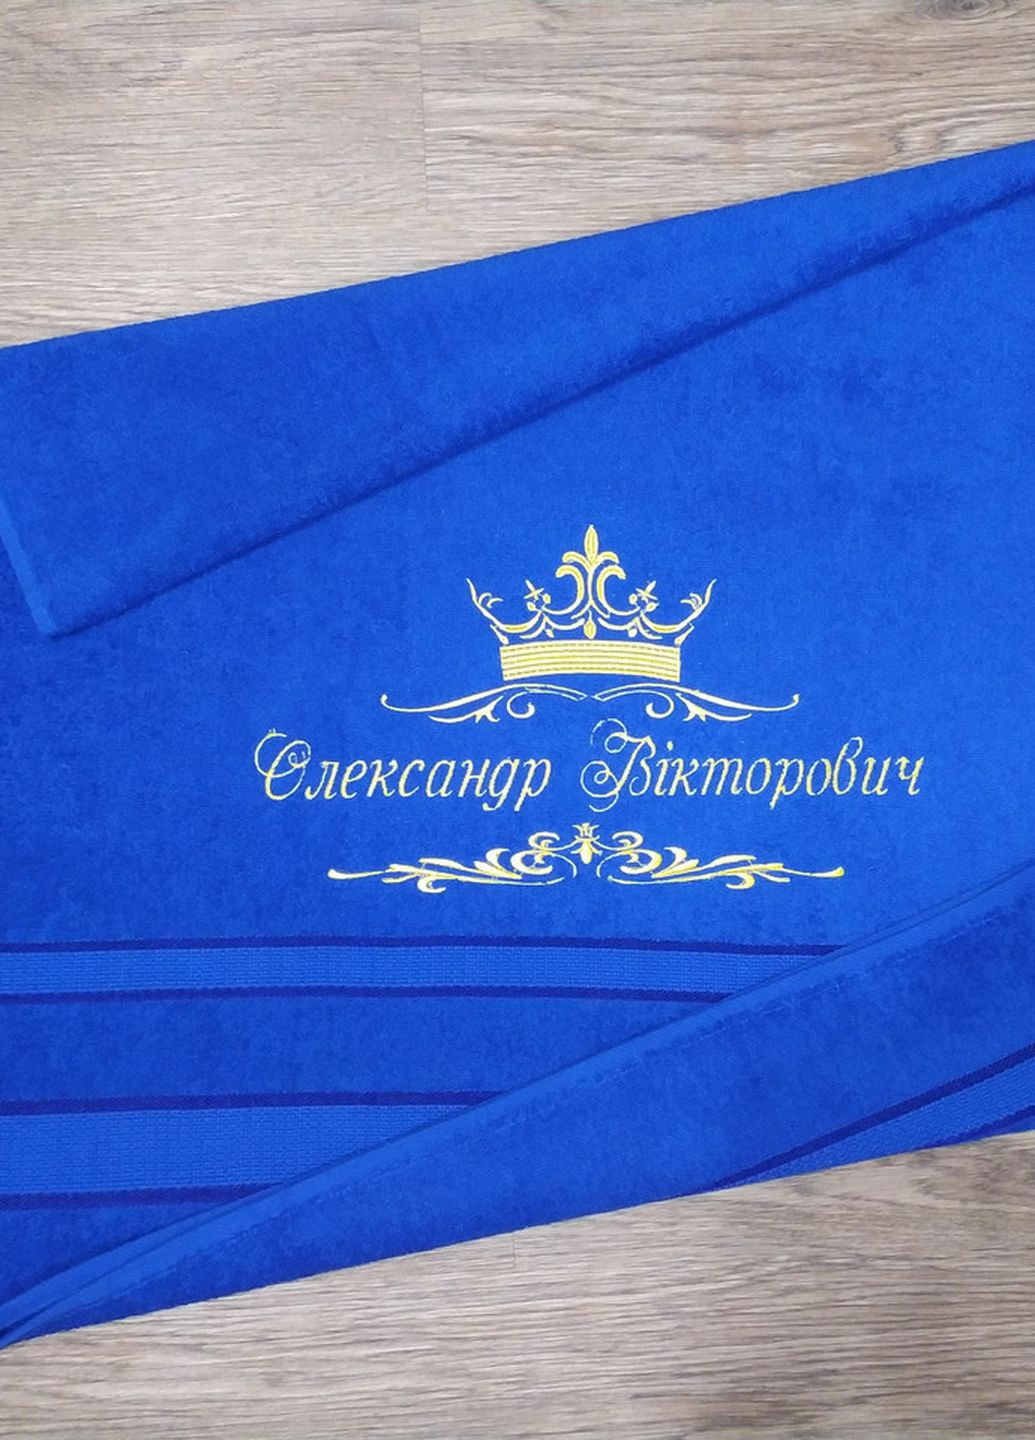 No Brand полотенце с именной вышивкой махровое банное 70*140 синий александр 00373 однотонный синий производство - Украина